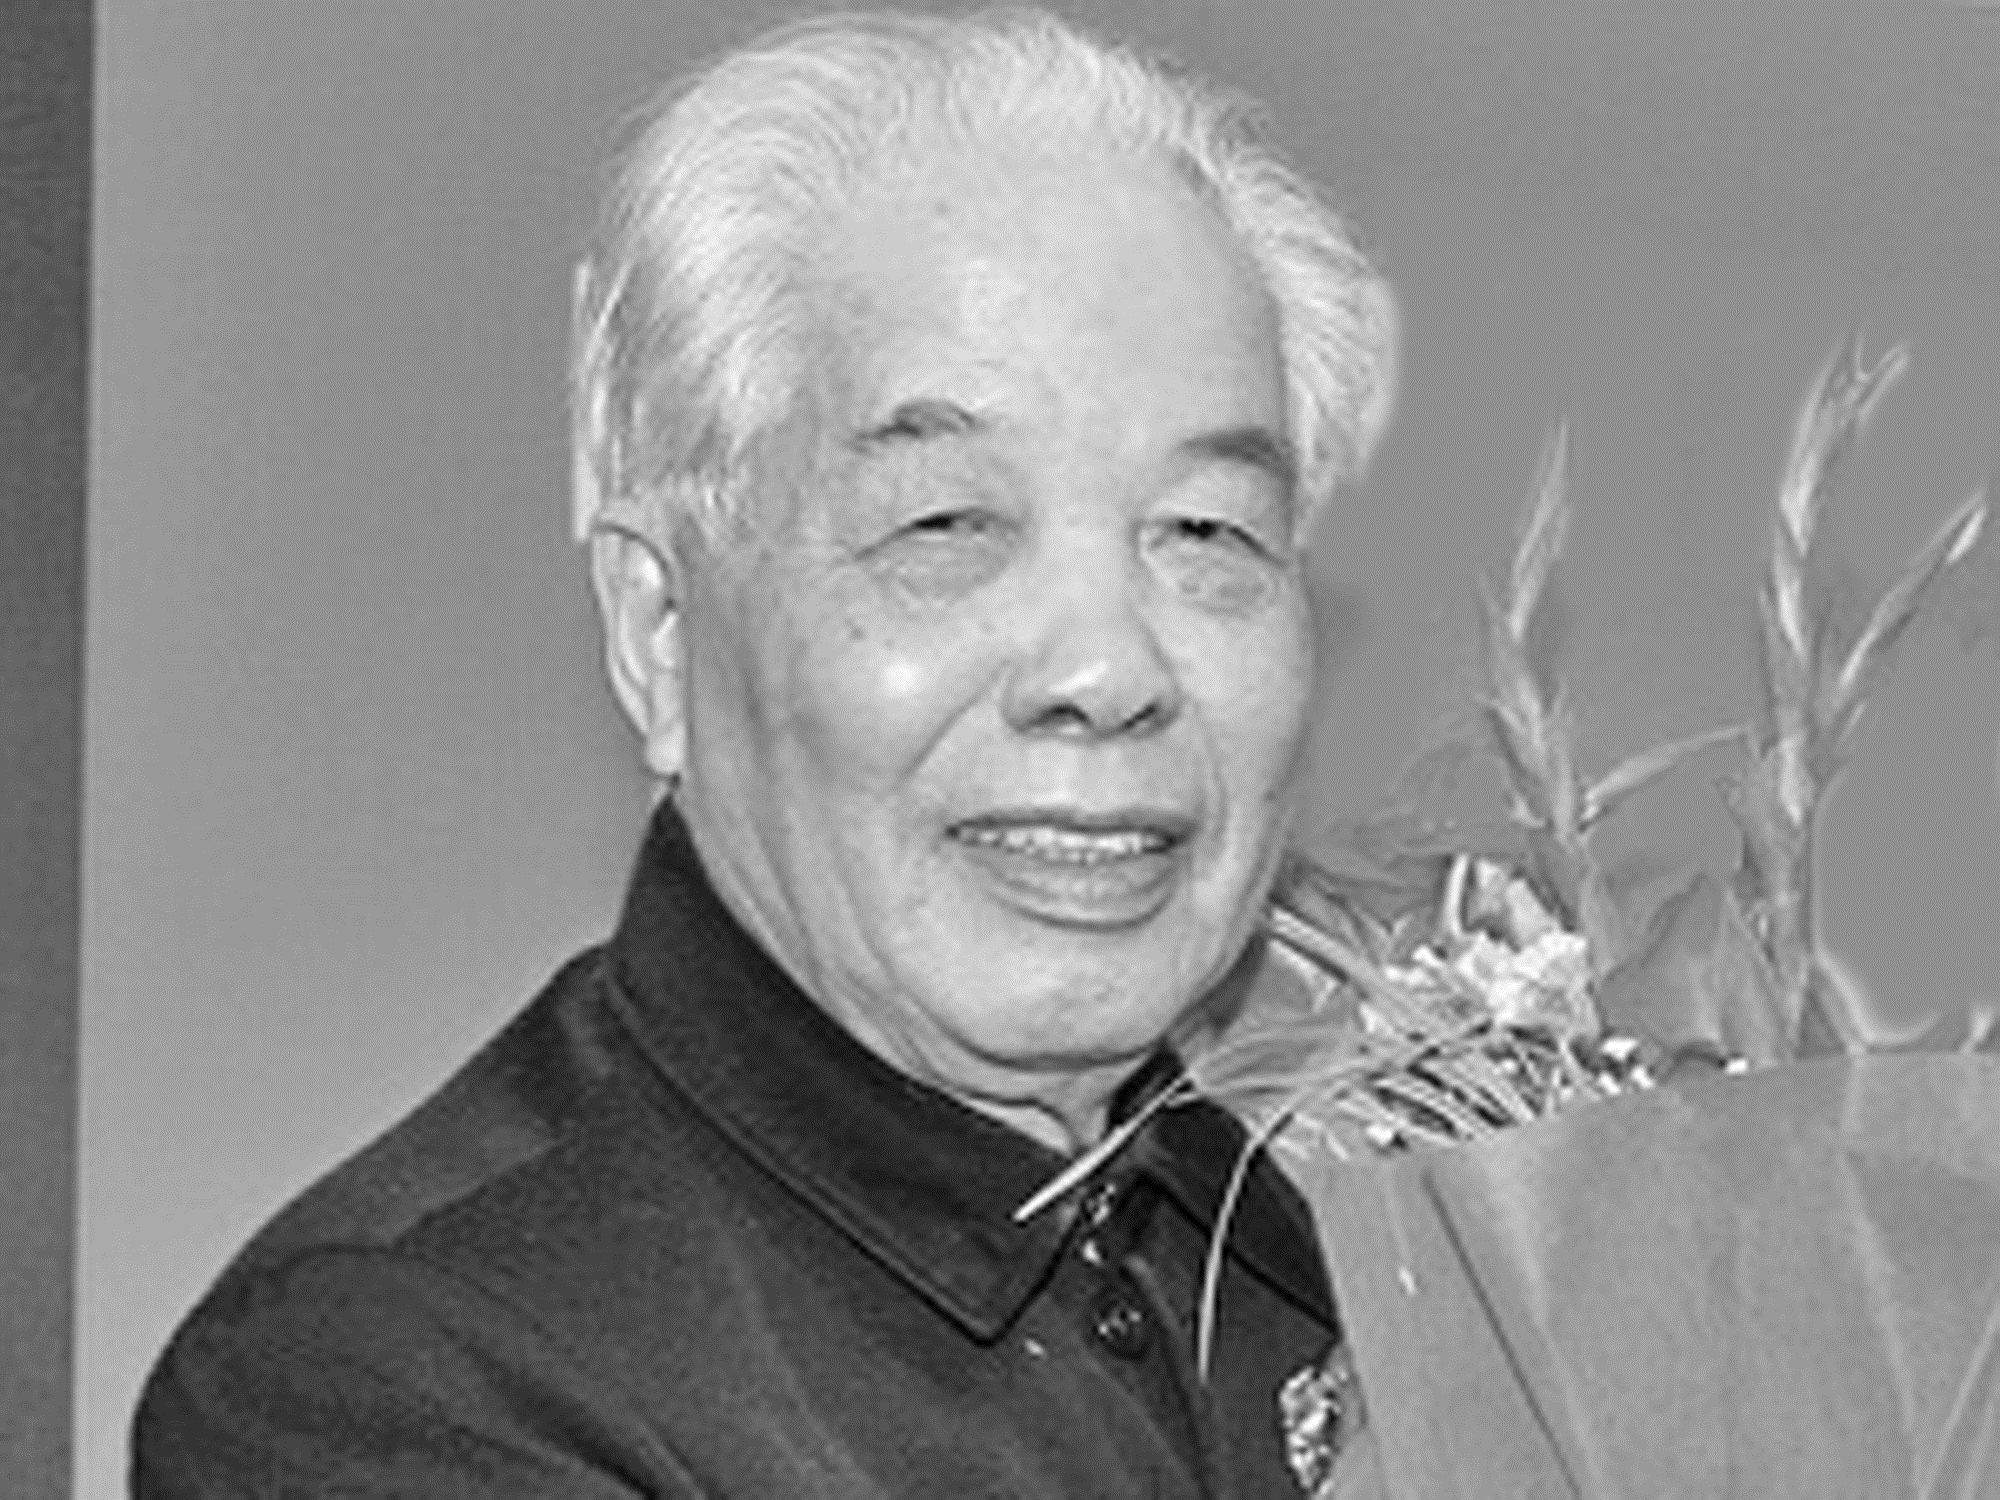 Đồng chí Đỗ Mười (tên thật là Nguyễn Duy Cống, sinh năm 1917) quê ở xã Đông Mỹ, huyện Thanh Trì, thành phố Hà Nội. Đồng chí Đỗ Mười được bầu làm Tổng Bí thư từ 28/6/1991 – 26/12/1997.